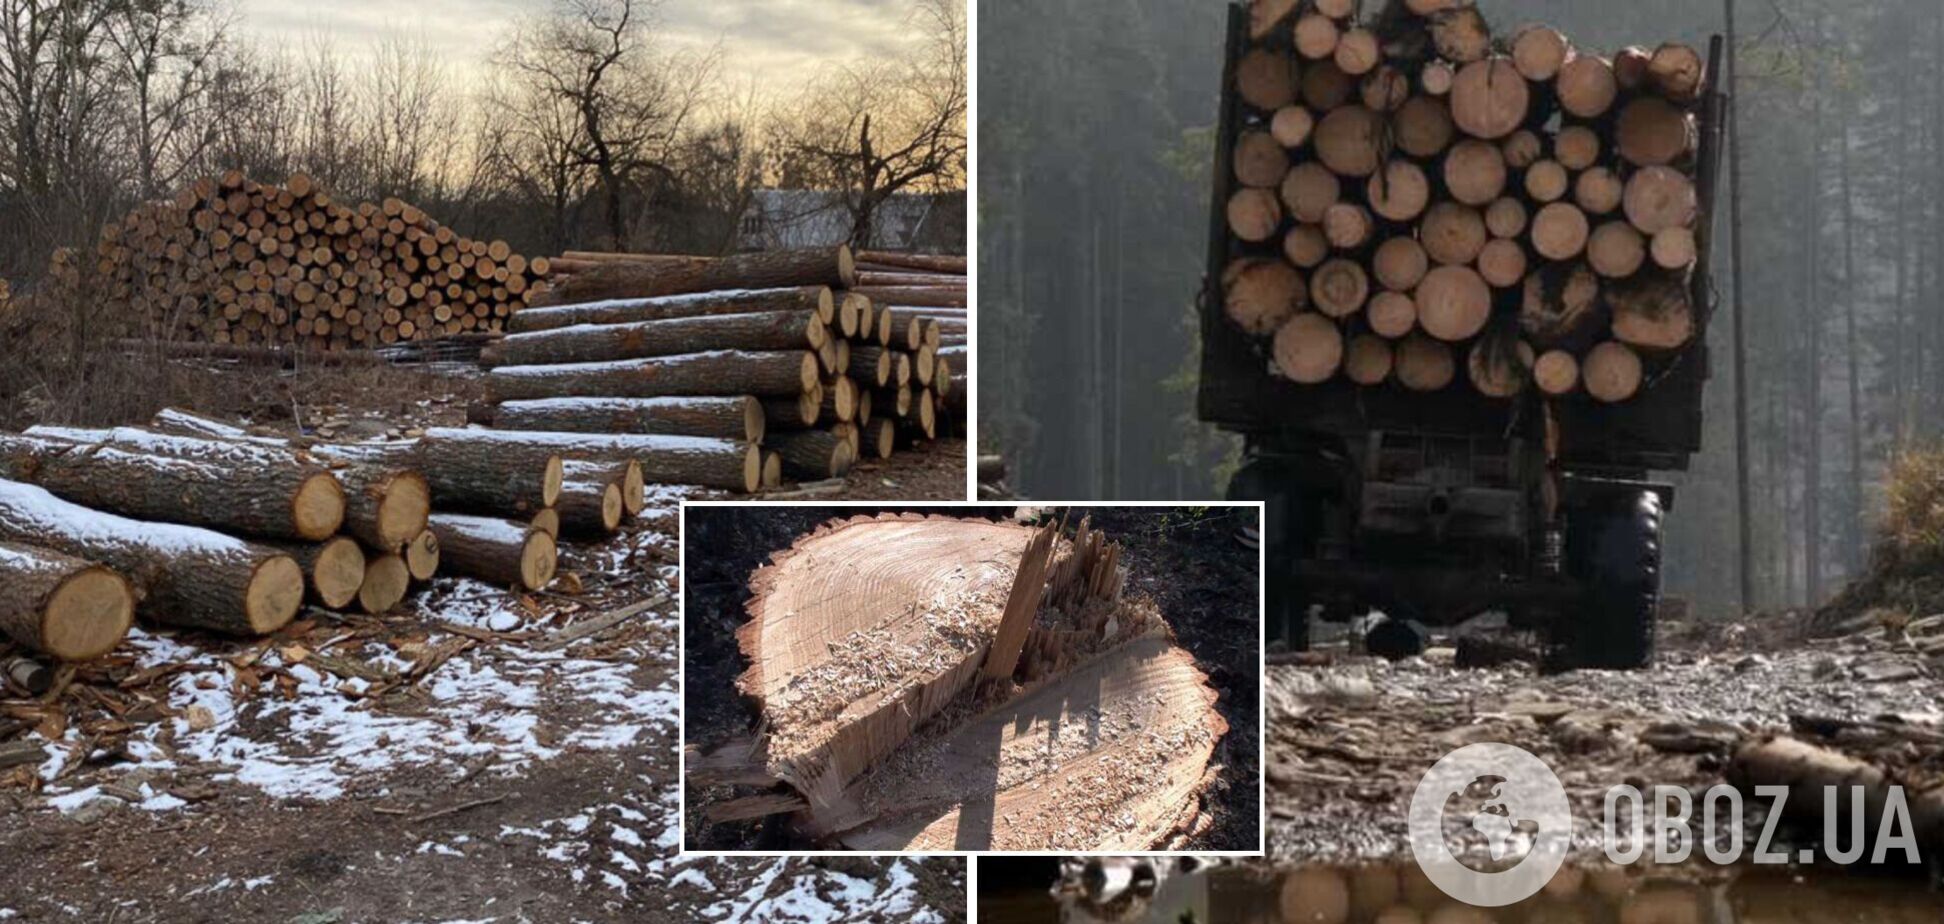 Незаконна вирубка лісів та екотероризм залишаються гострою проблемою в Україні